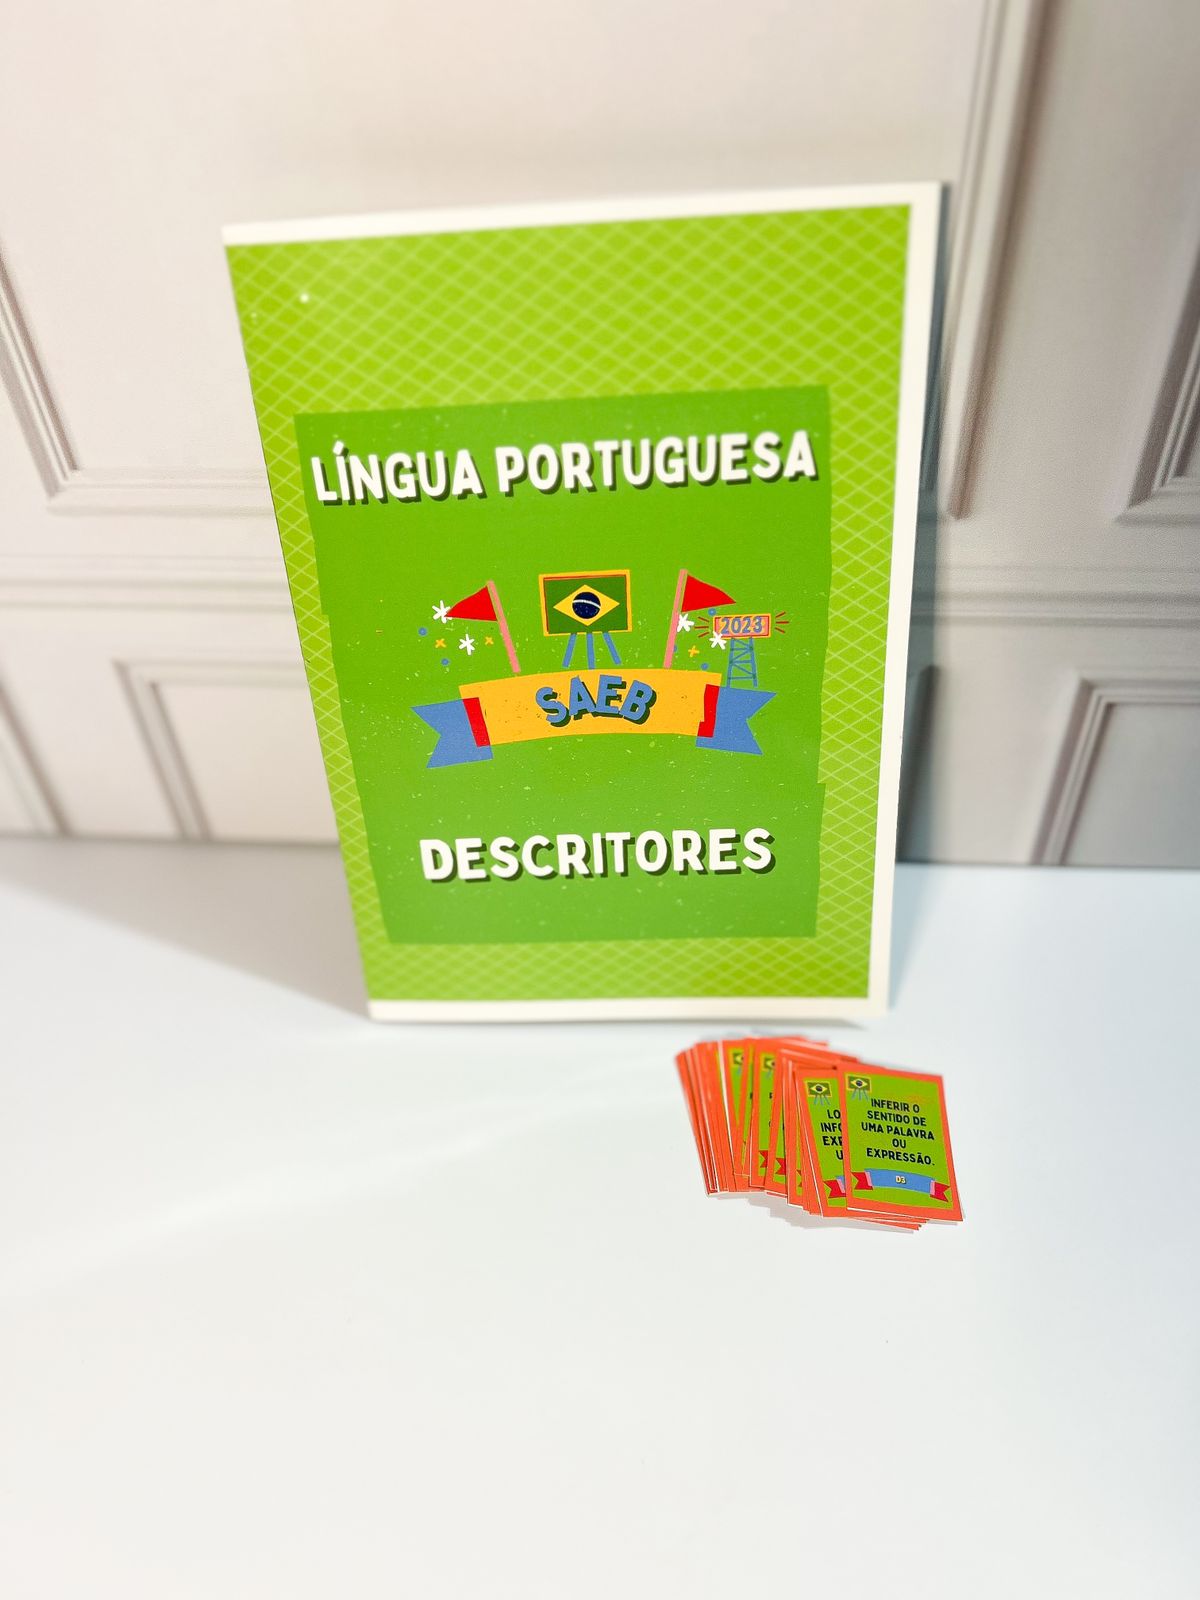 Jogo SAEB – 9º ano – Língua Portuguesa – Loja – Português Encantado